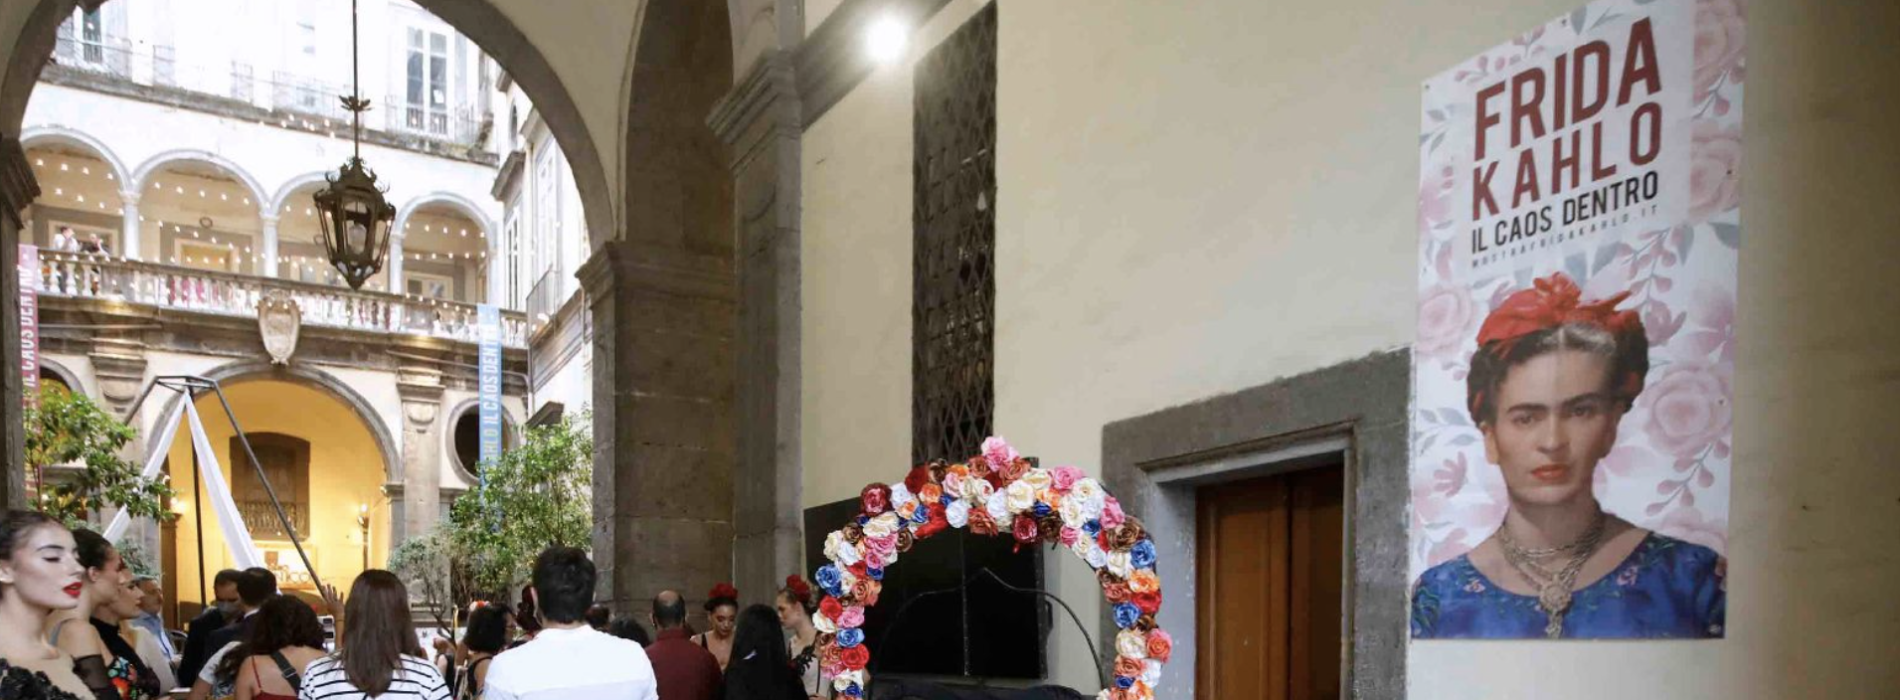 Frida resta a Napoli, prorogata l’esposizione di Palazzo Fondi